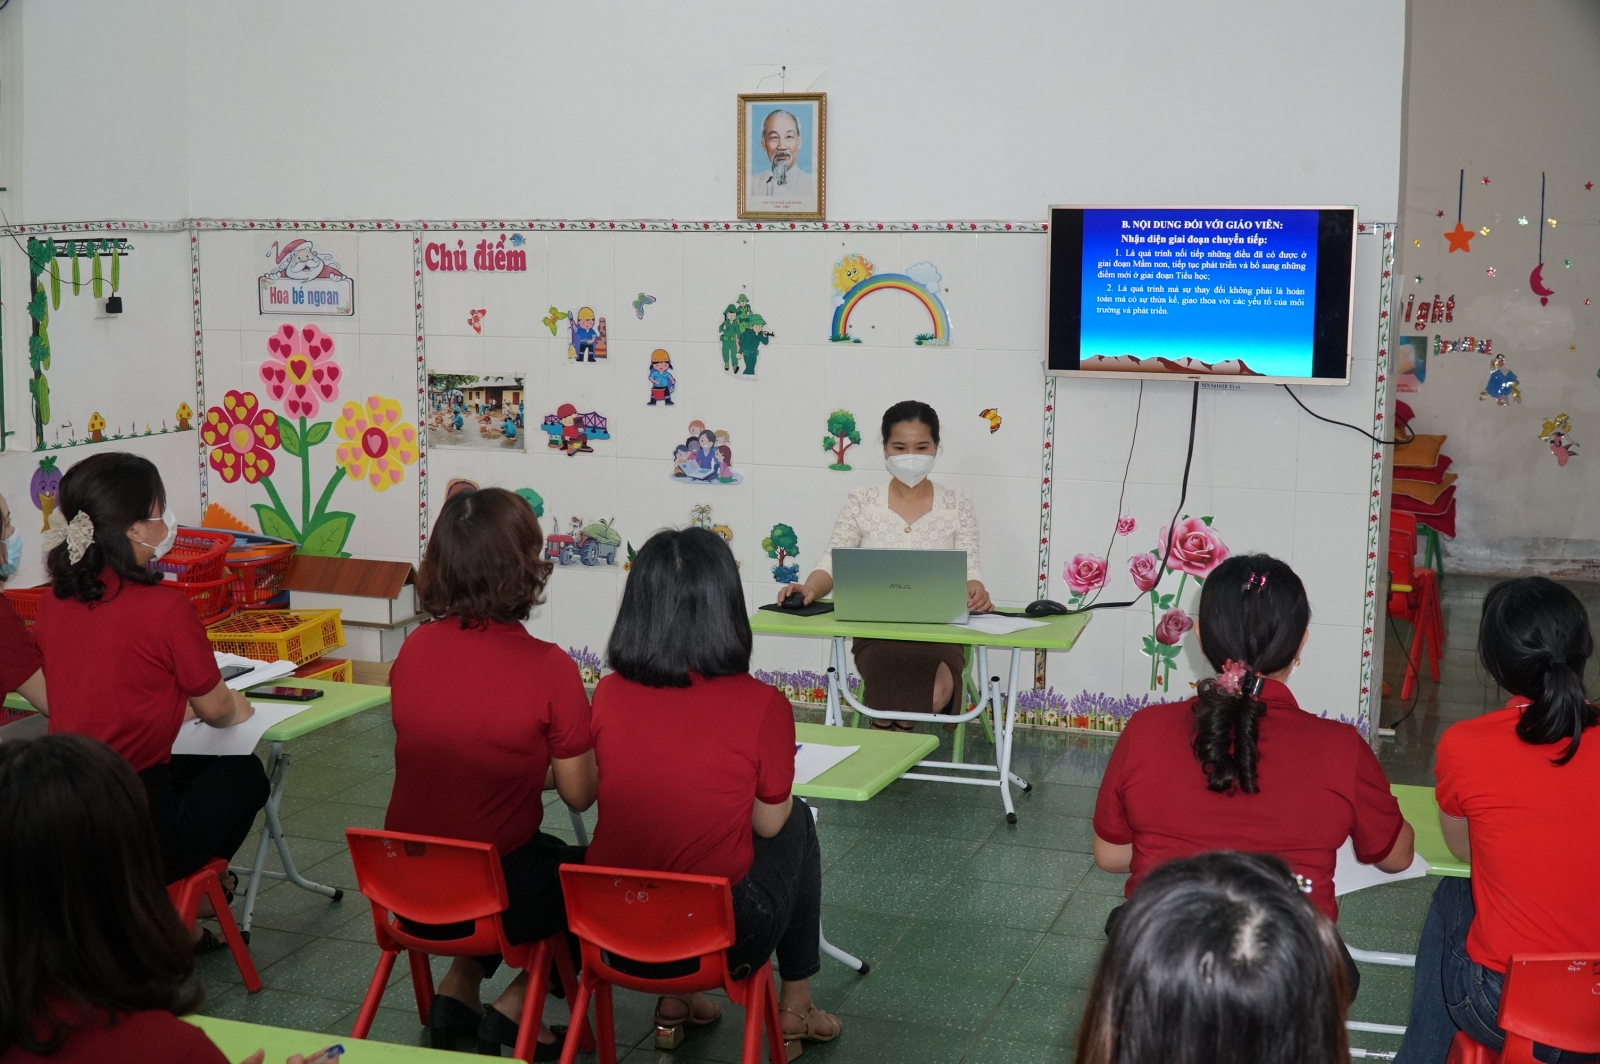 Nghệ An: Chủ động hình thức dạy học cho trẻ mầm non 5 tuổi chuẩn bị vào lớp 1 - Ảnh minh hoạ 3